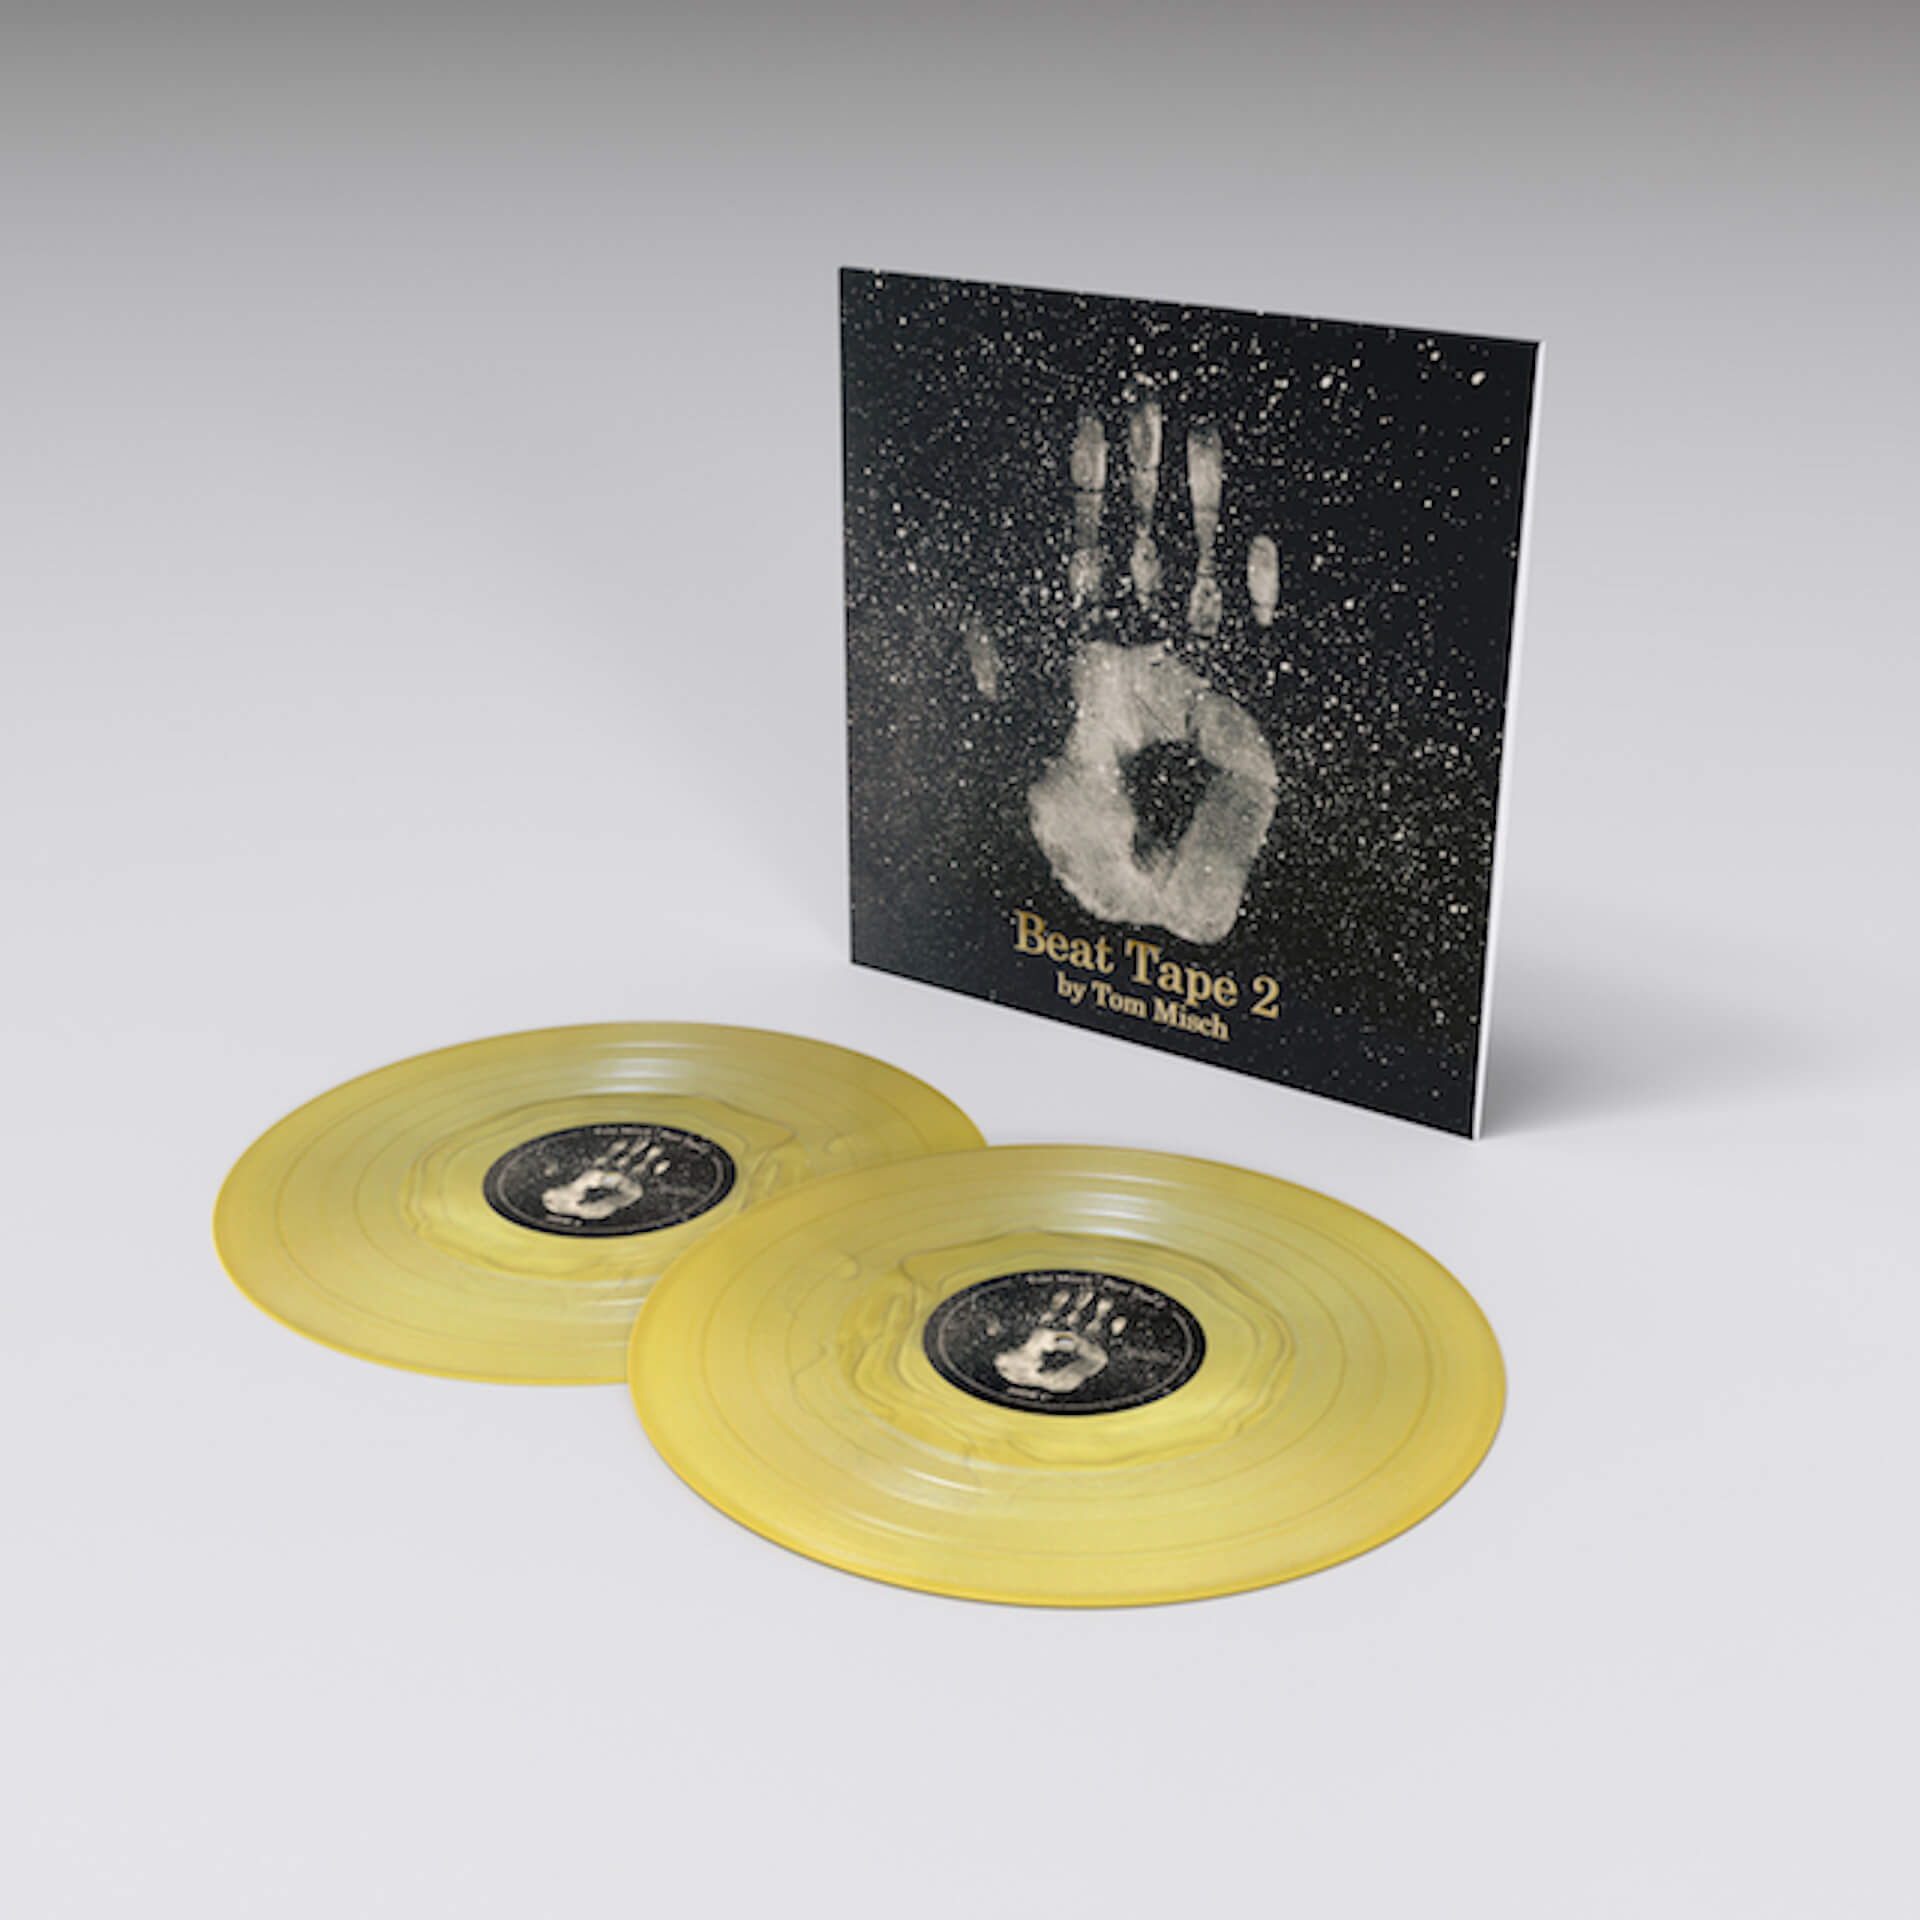 Tom Mischの傑作『Beat Tape 2』が5周年記念ゴールド盤LPでリリース 